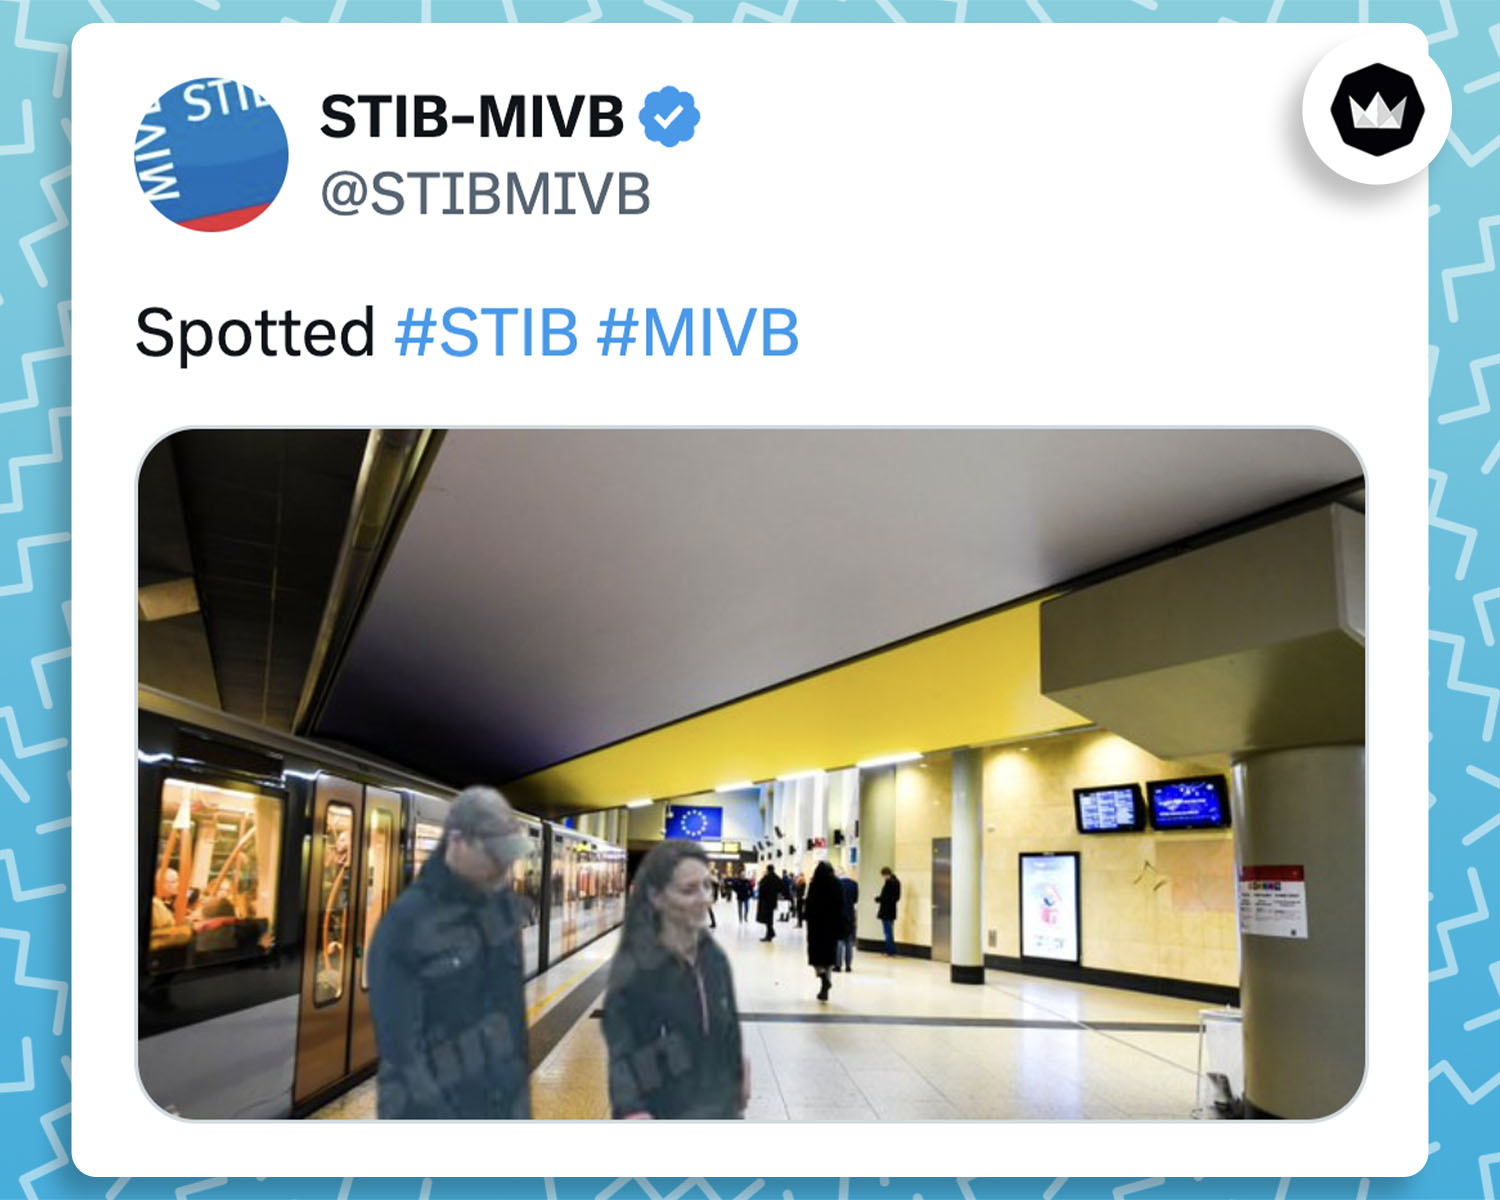 @STIBMIVB :
"Spotted #STIB #MIVB"
Avec un photomontage de Kate Middleton et du Prince William dans le métro de Bruxelles.